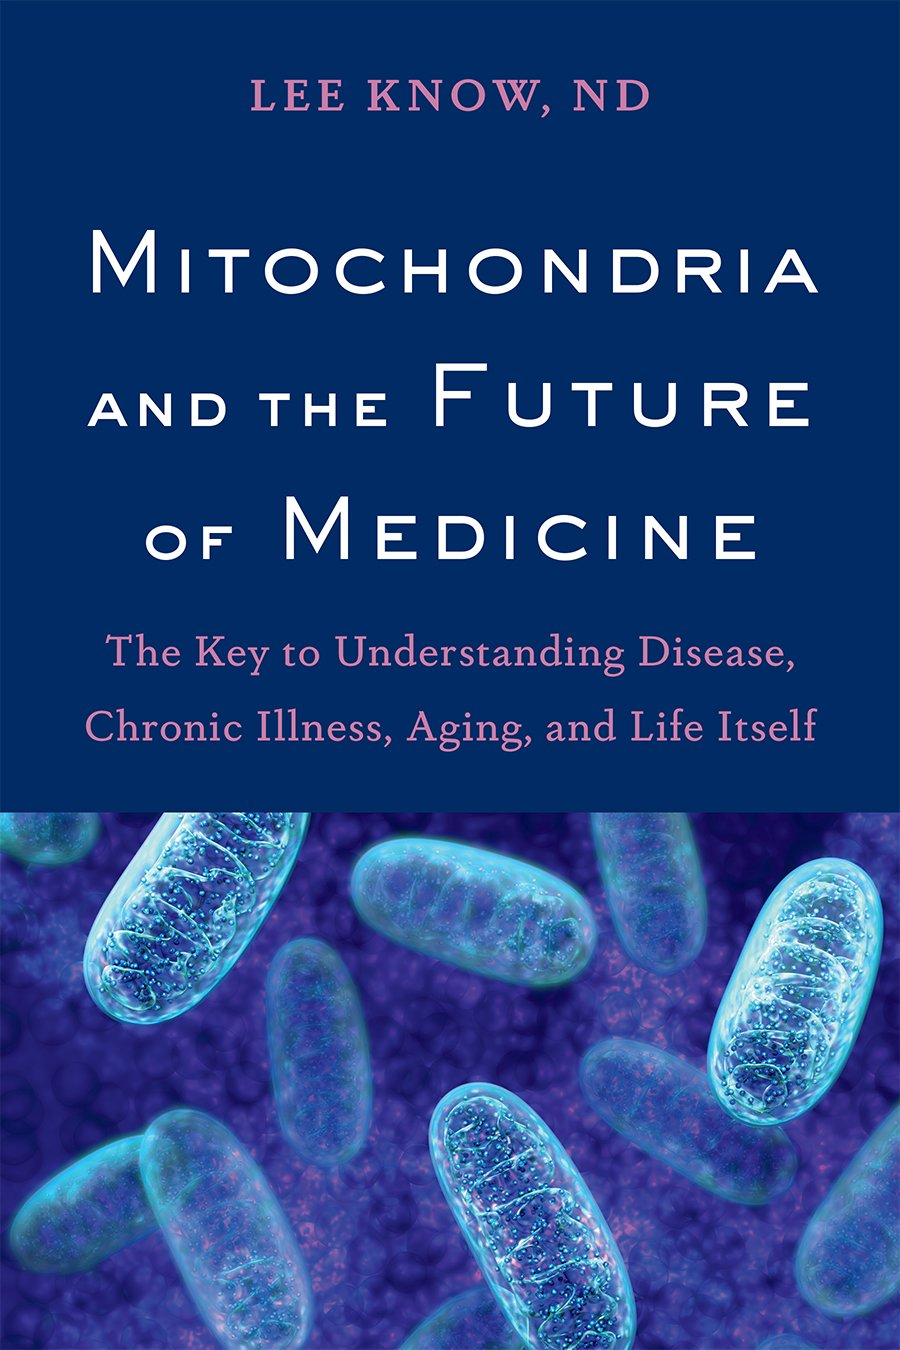 The Mitochondria and the Future of Medicine cover